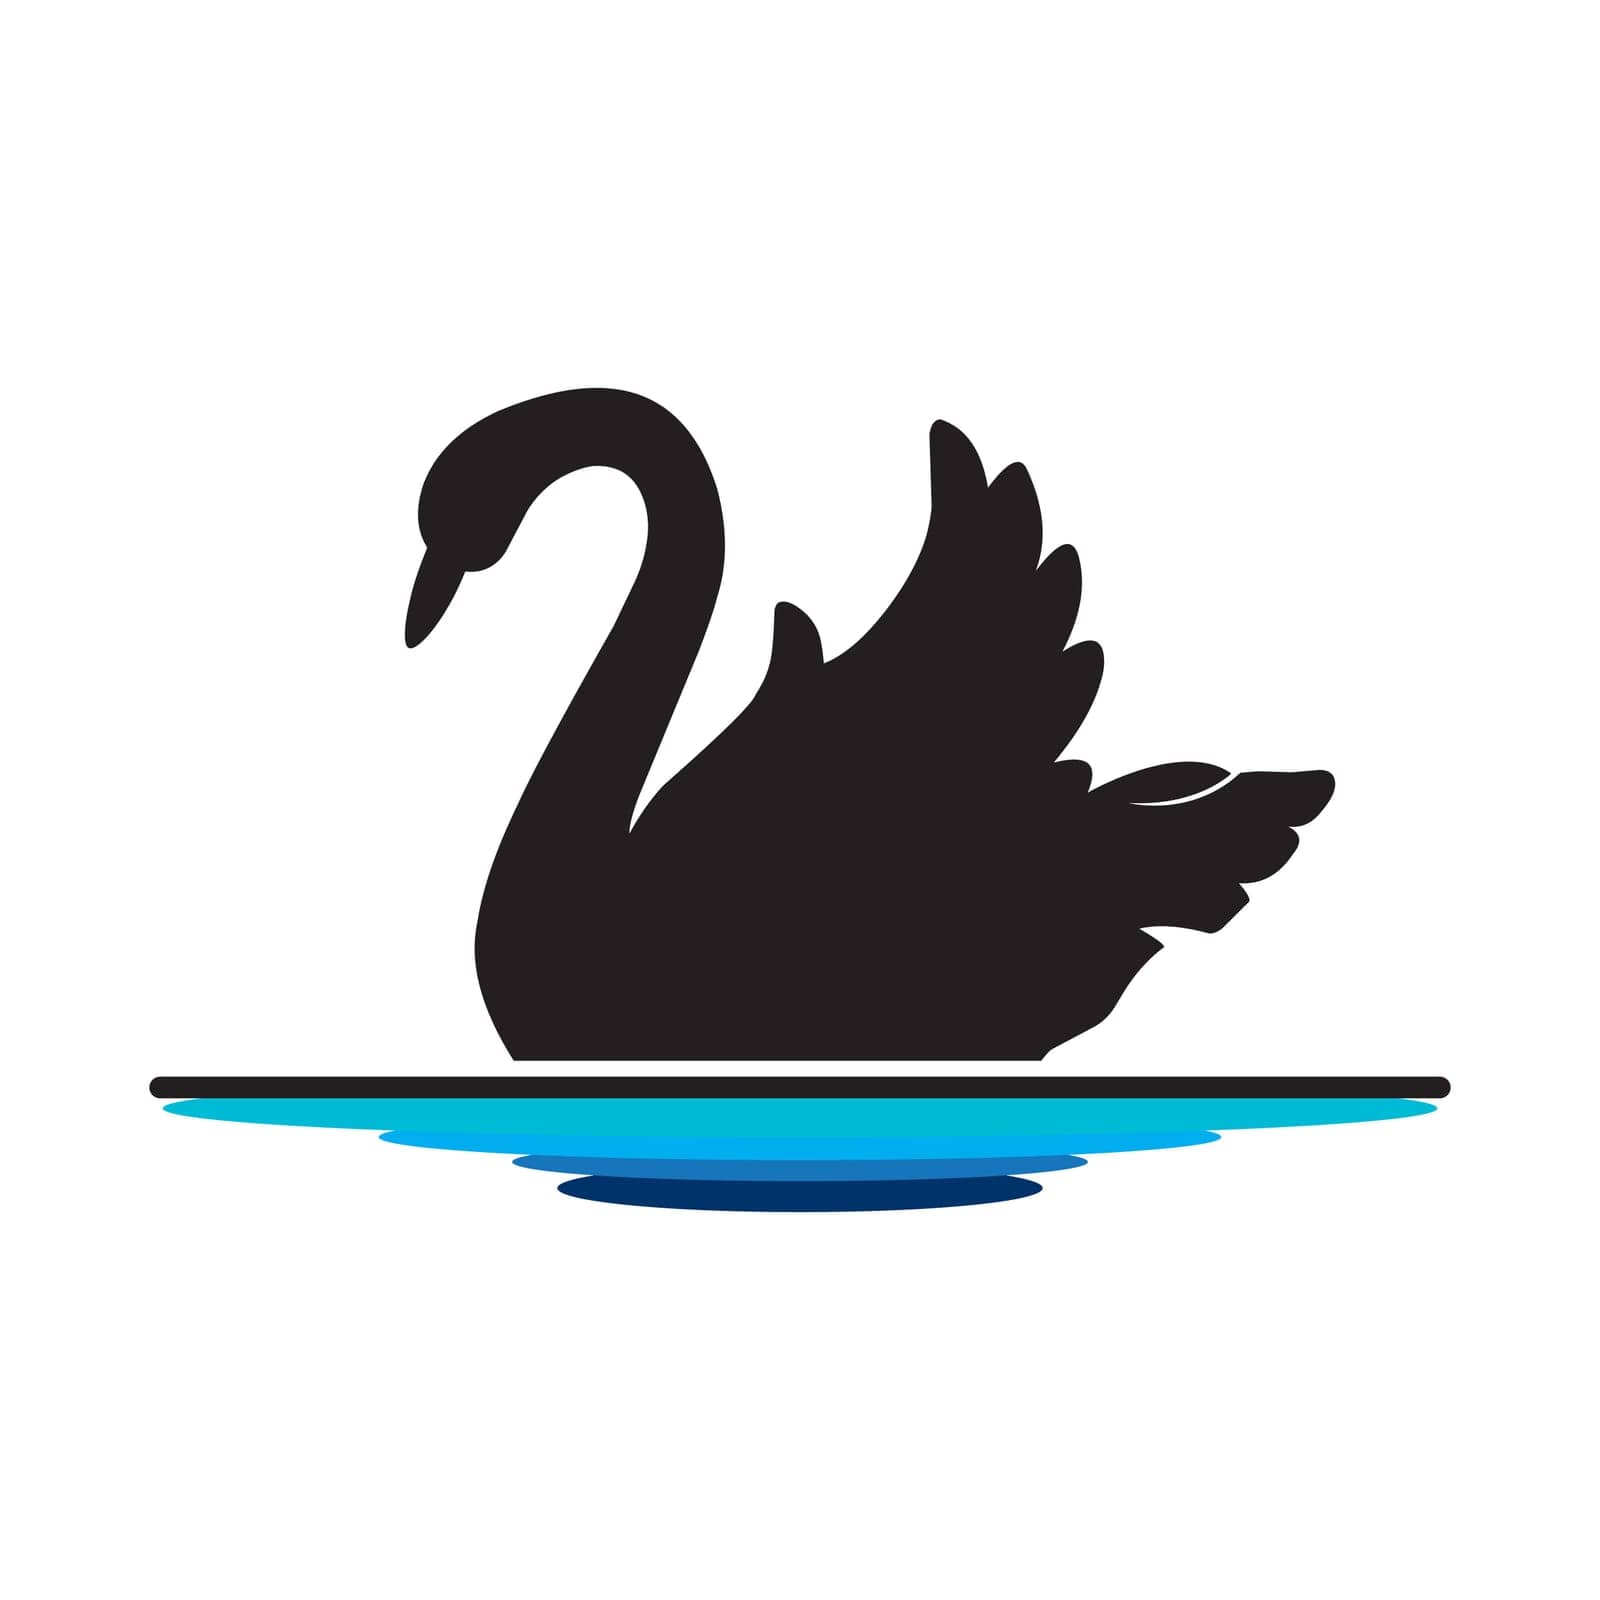 Vector swan silhouette illustration logo design